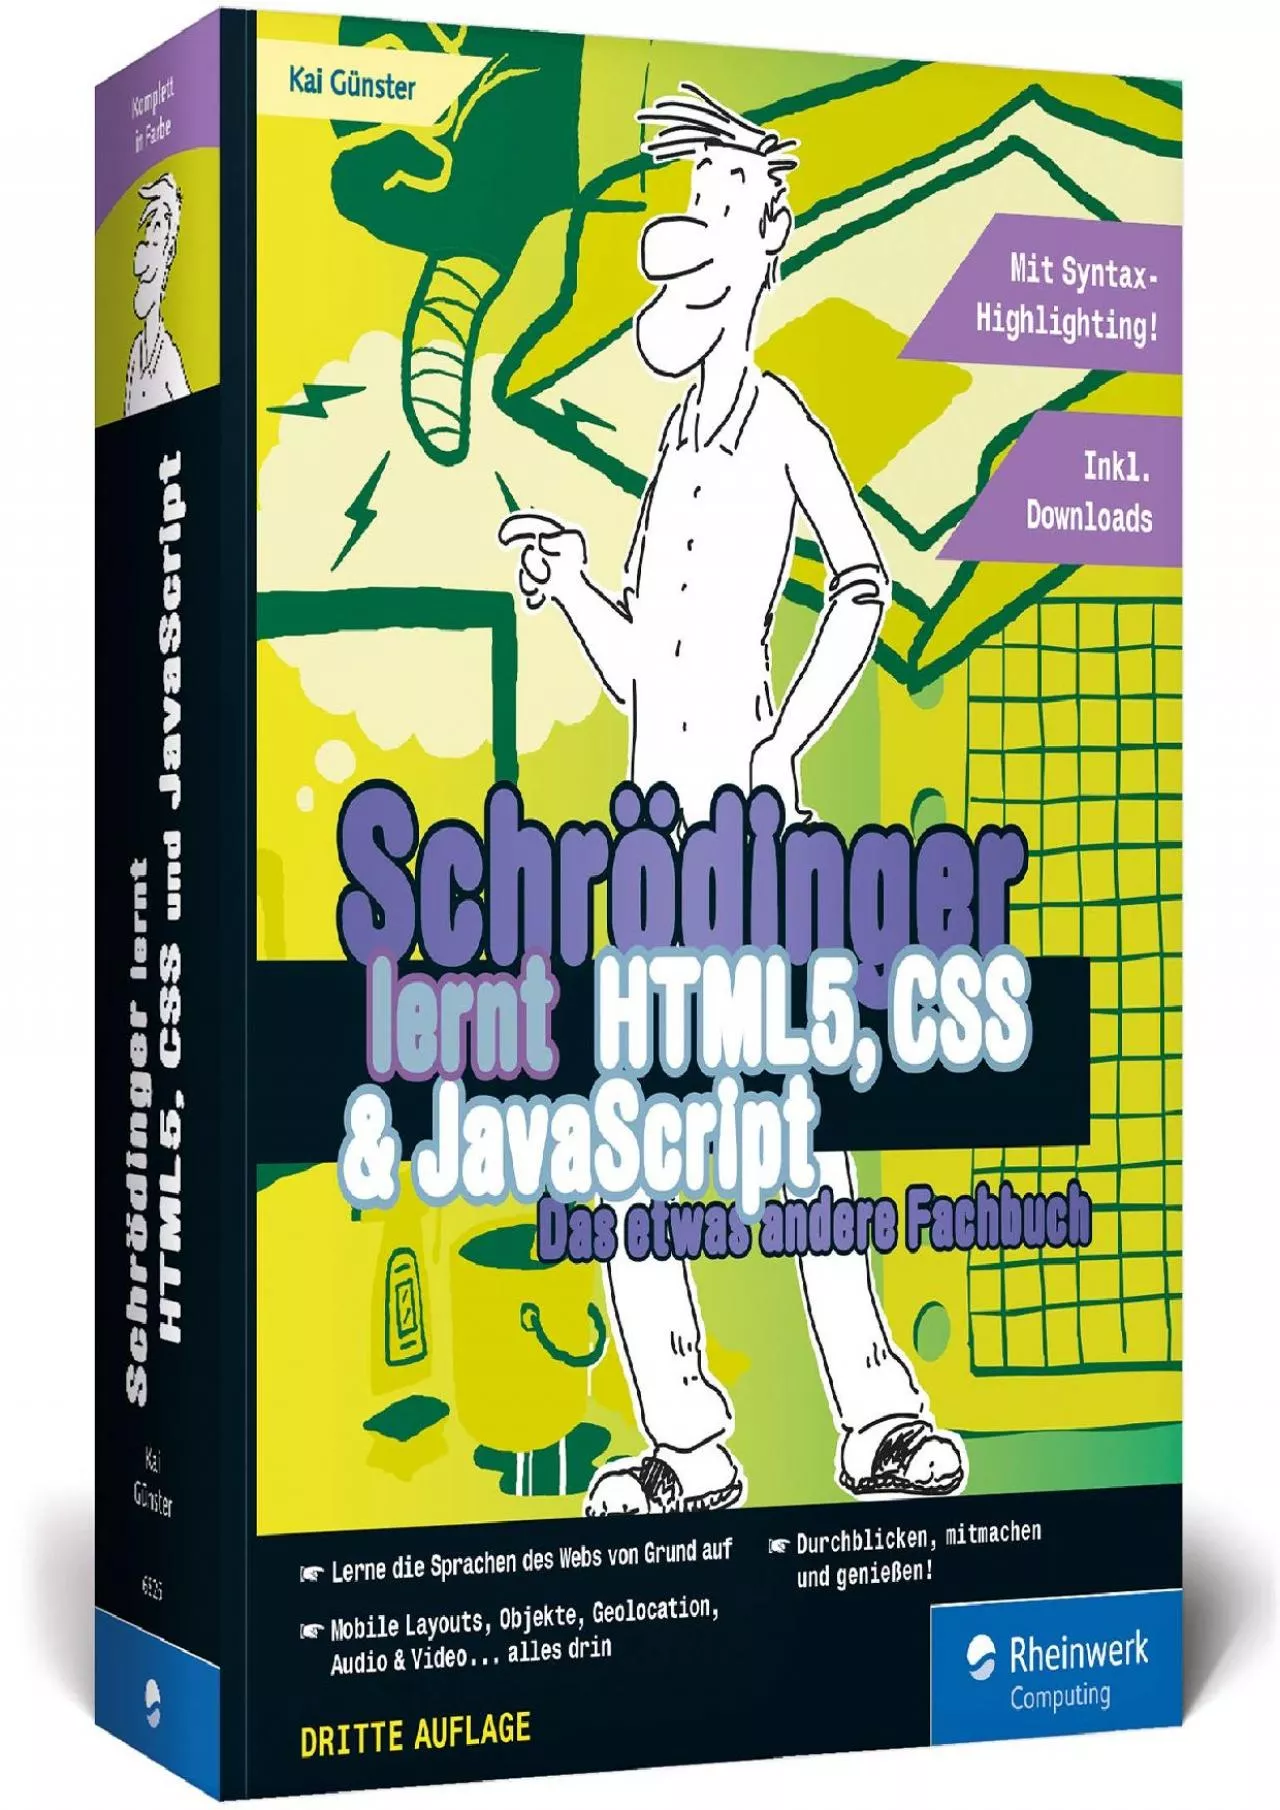 [BEST]-Schrödinger lernt HTML5, CSS und JavaScript: Das etwas andere Fachbuch. Der volle